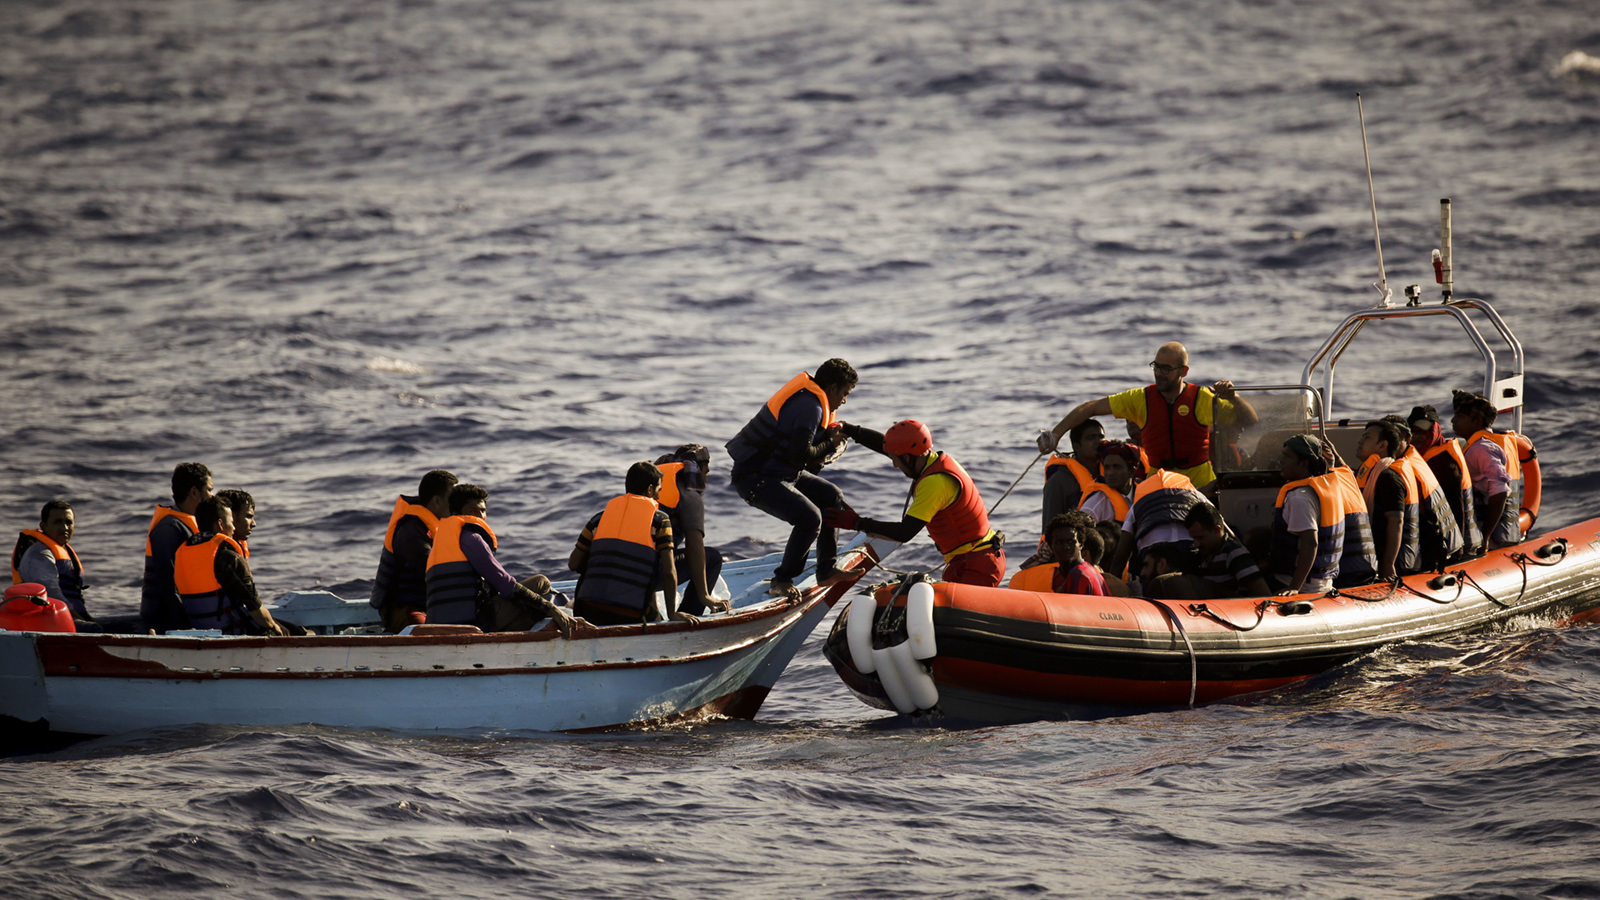 כוחות הצלה ספרדים מחלצים פליטים לובים מסירת הצלה לאחר שסירתם טבעה בדרכה לחופי איטליה, אוגוסט 2016, לפחות שלושה אנשים מתו בתקרית (צילום: AP)